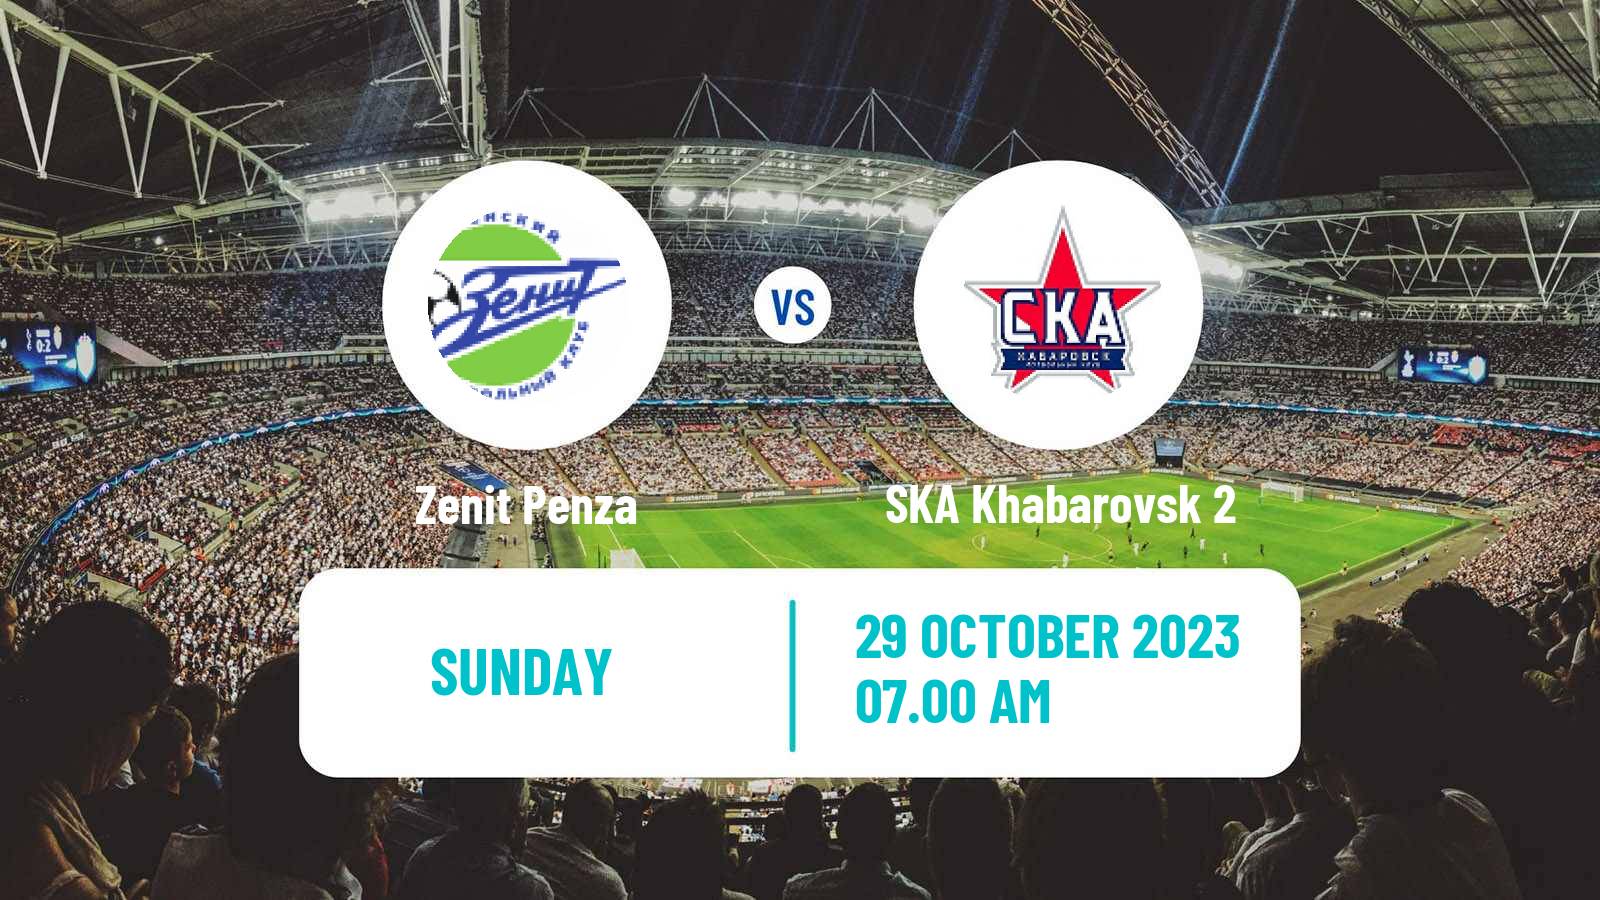 Soccer FNL 2 Division B Group 3 Zenit Penza - SKA Khabarovsk 2